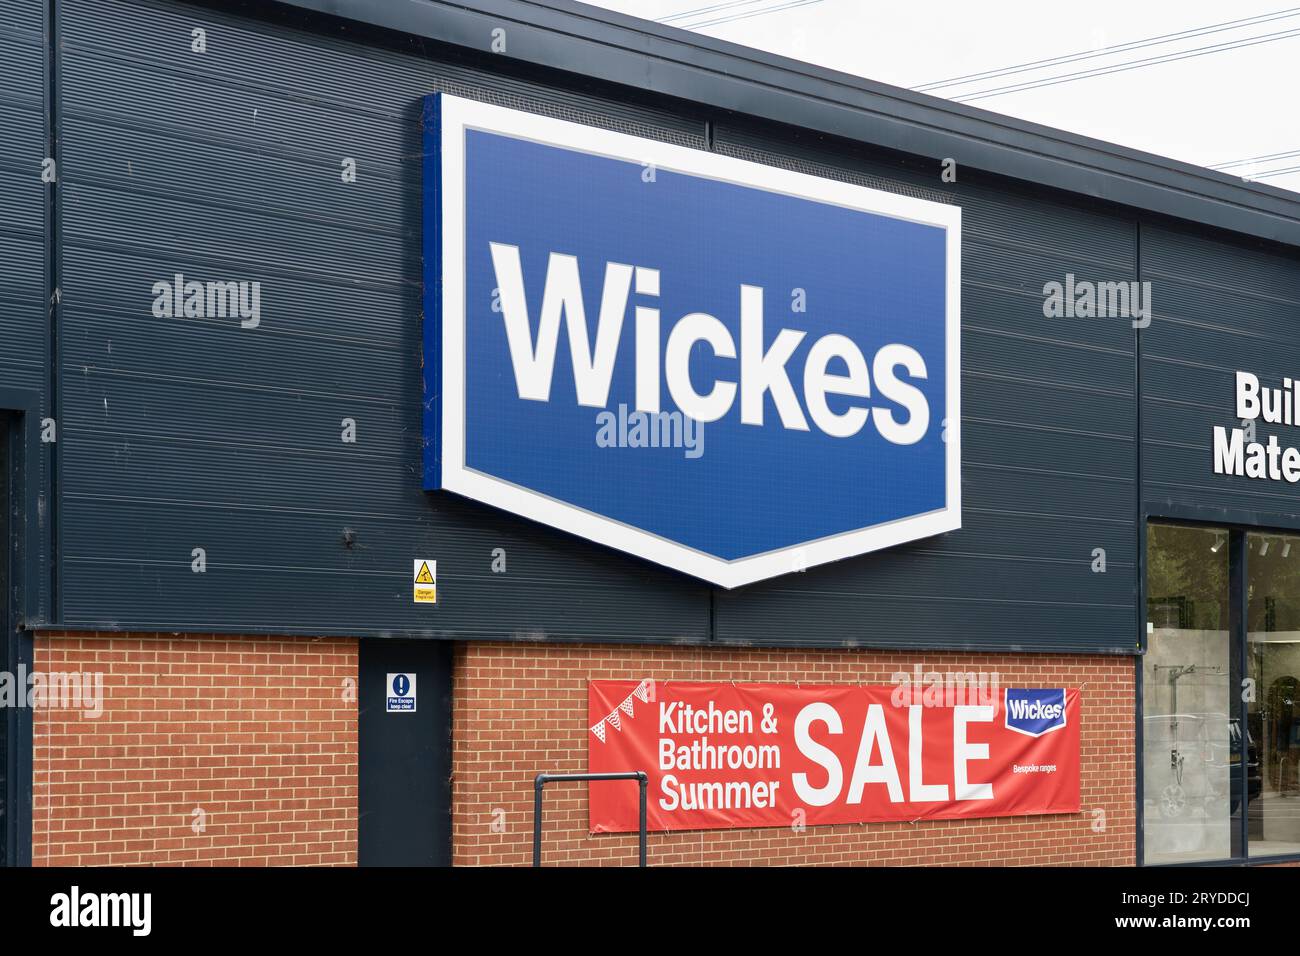 Wickes logo et magasin à Oxford, avec une bannière annonçant une vente d'été sur cuisines et salles de bains, Royaume-Uni. Concept : DIY, amélioration de la maison Banque D'Images